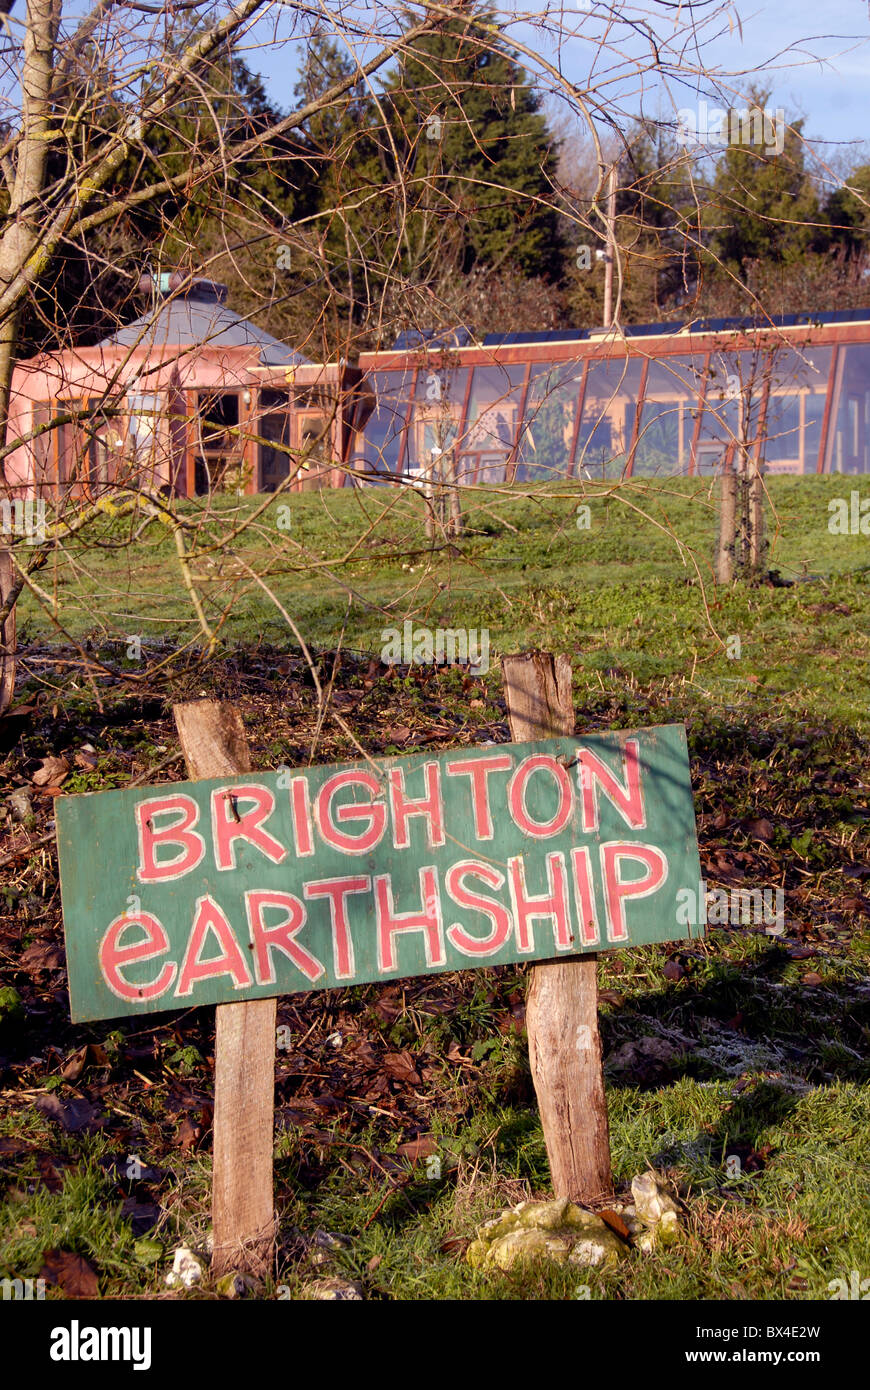 La primera earthship Earthship Brighton para ser construido a partir de caucho reciclado de neumáticos en el Reino Unido, Stanmer Park, Brighton, REINO UNIDO Foto de stock